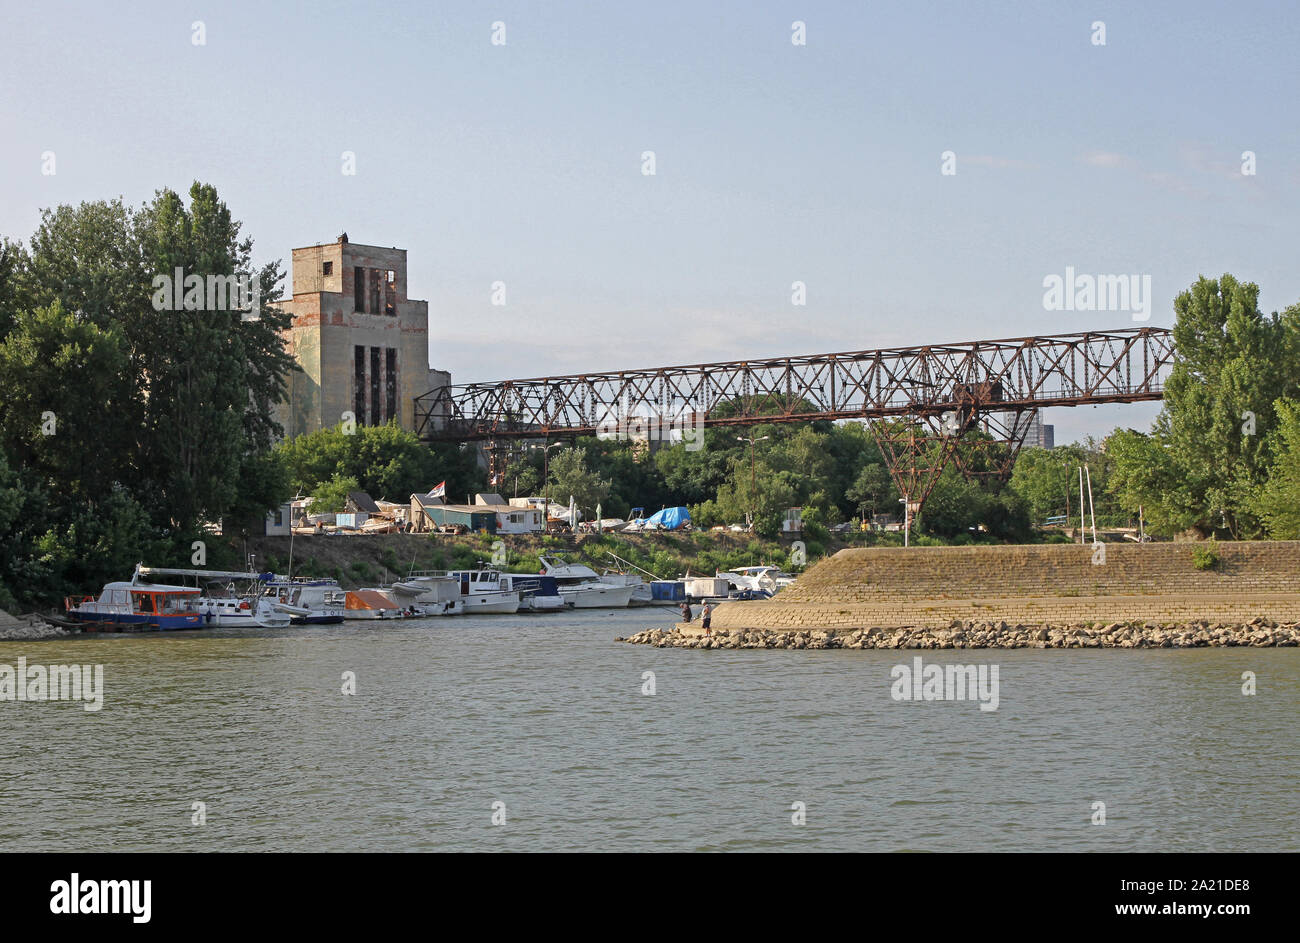 Ug Dorcol-Old centrale, Associazione delle città per il turismo e le attività ricreative in acqua di Dorcol- vecchia centrale, un punto di riferimento storico sul fiume Danubio, Belgrado, Serbia. Foto Stock